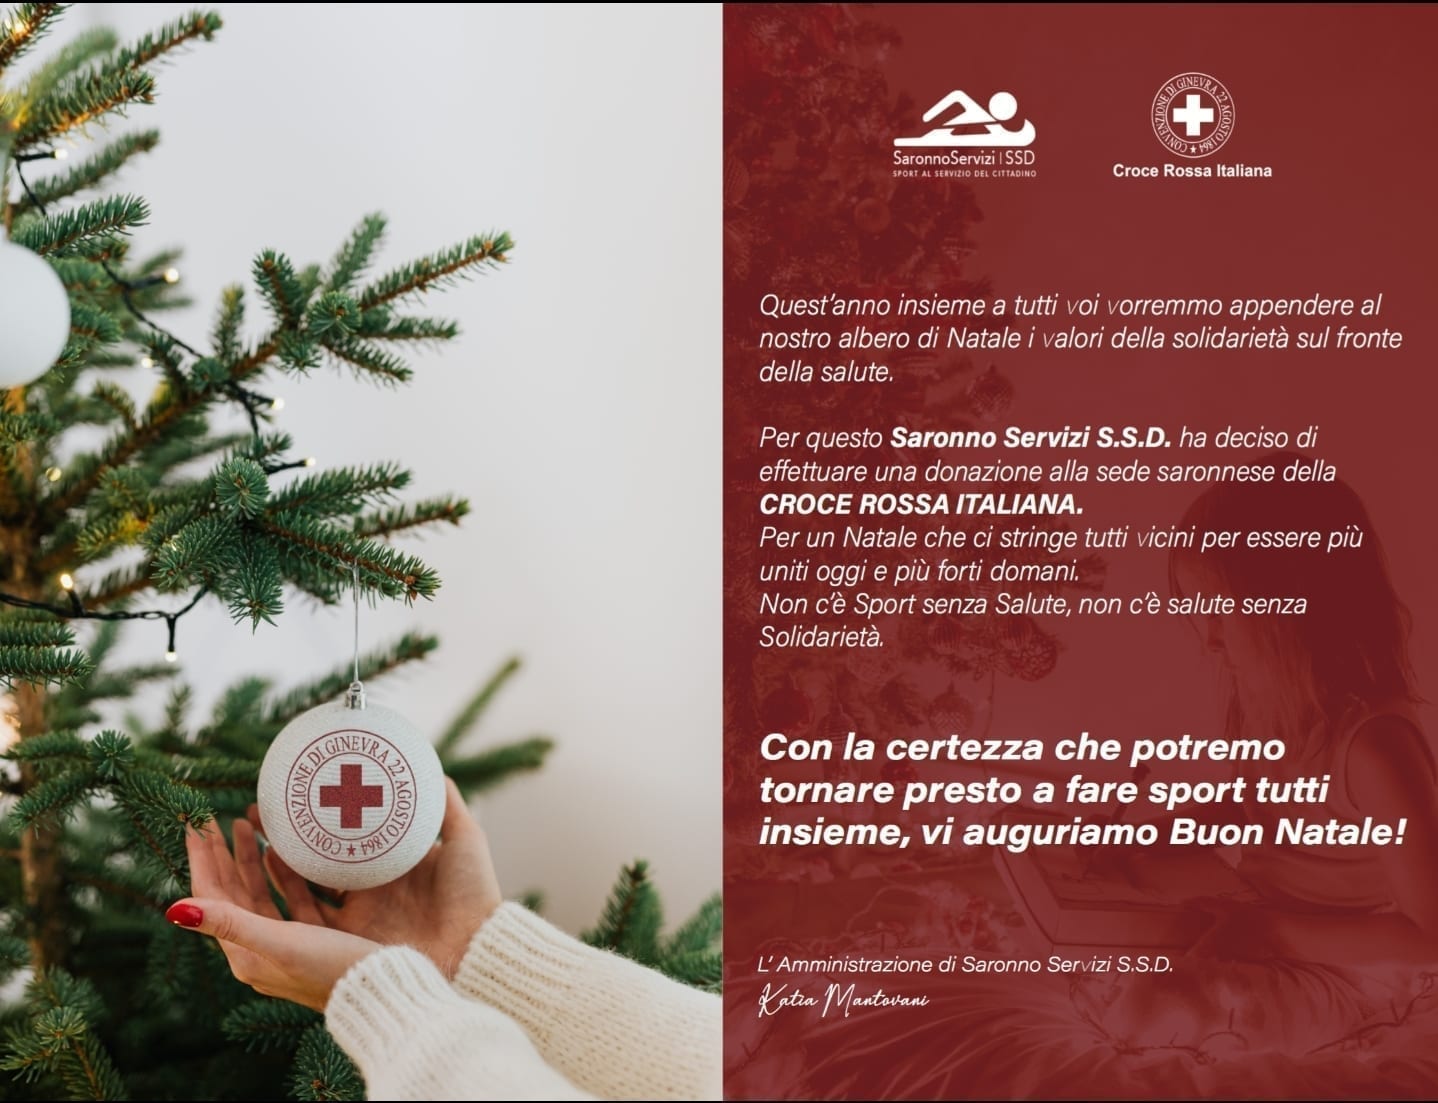 Natale, Saronno Servizi ssd “si regala” una donazione a Croce Rossa Saronno